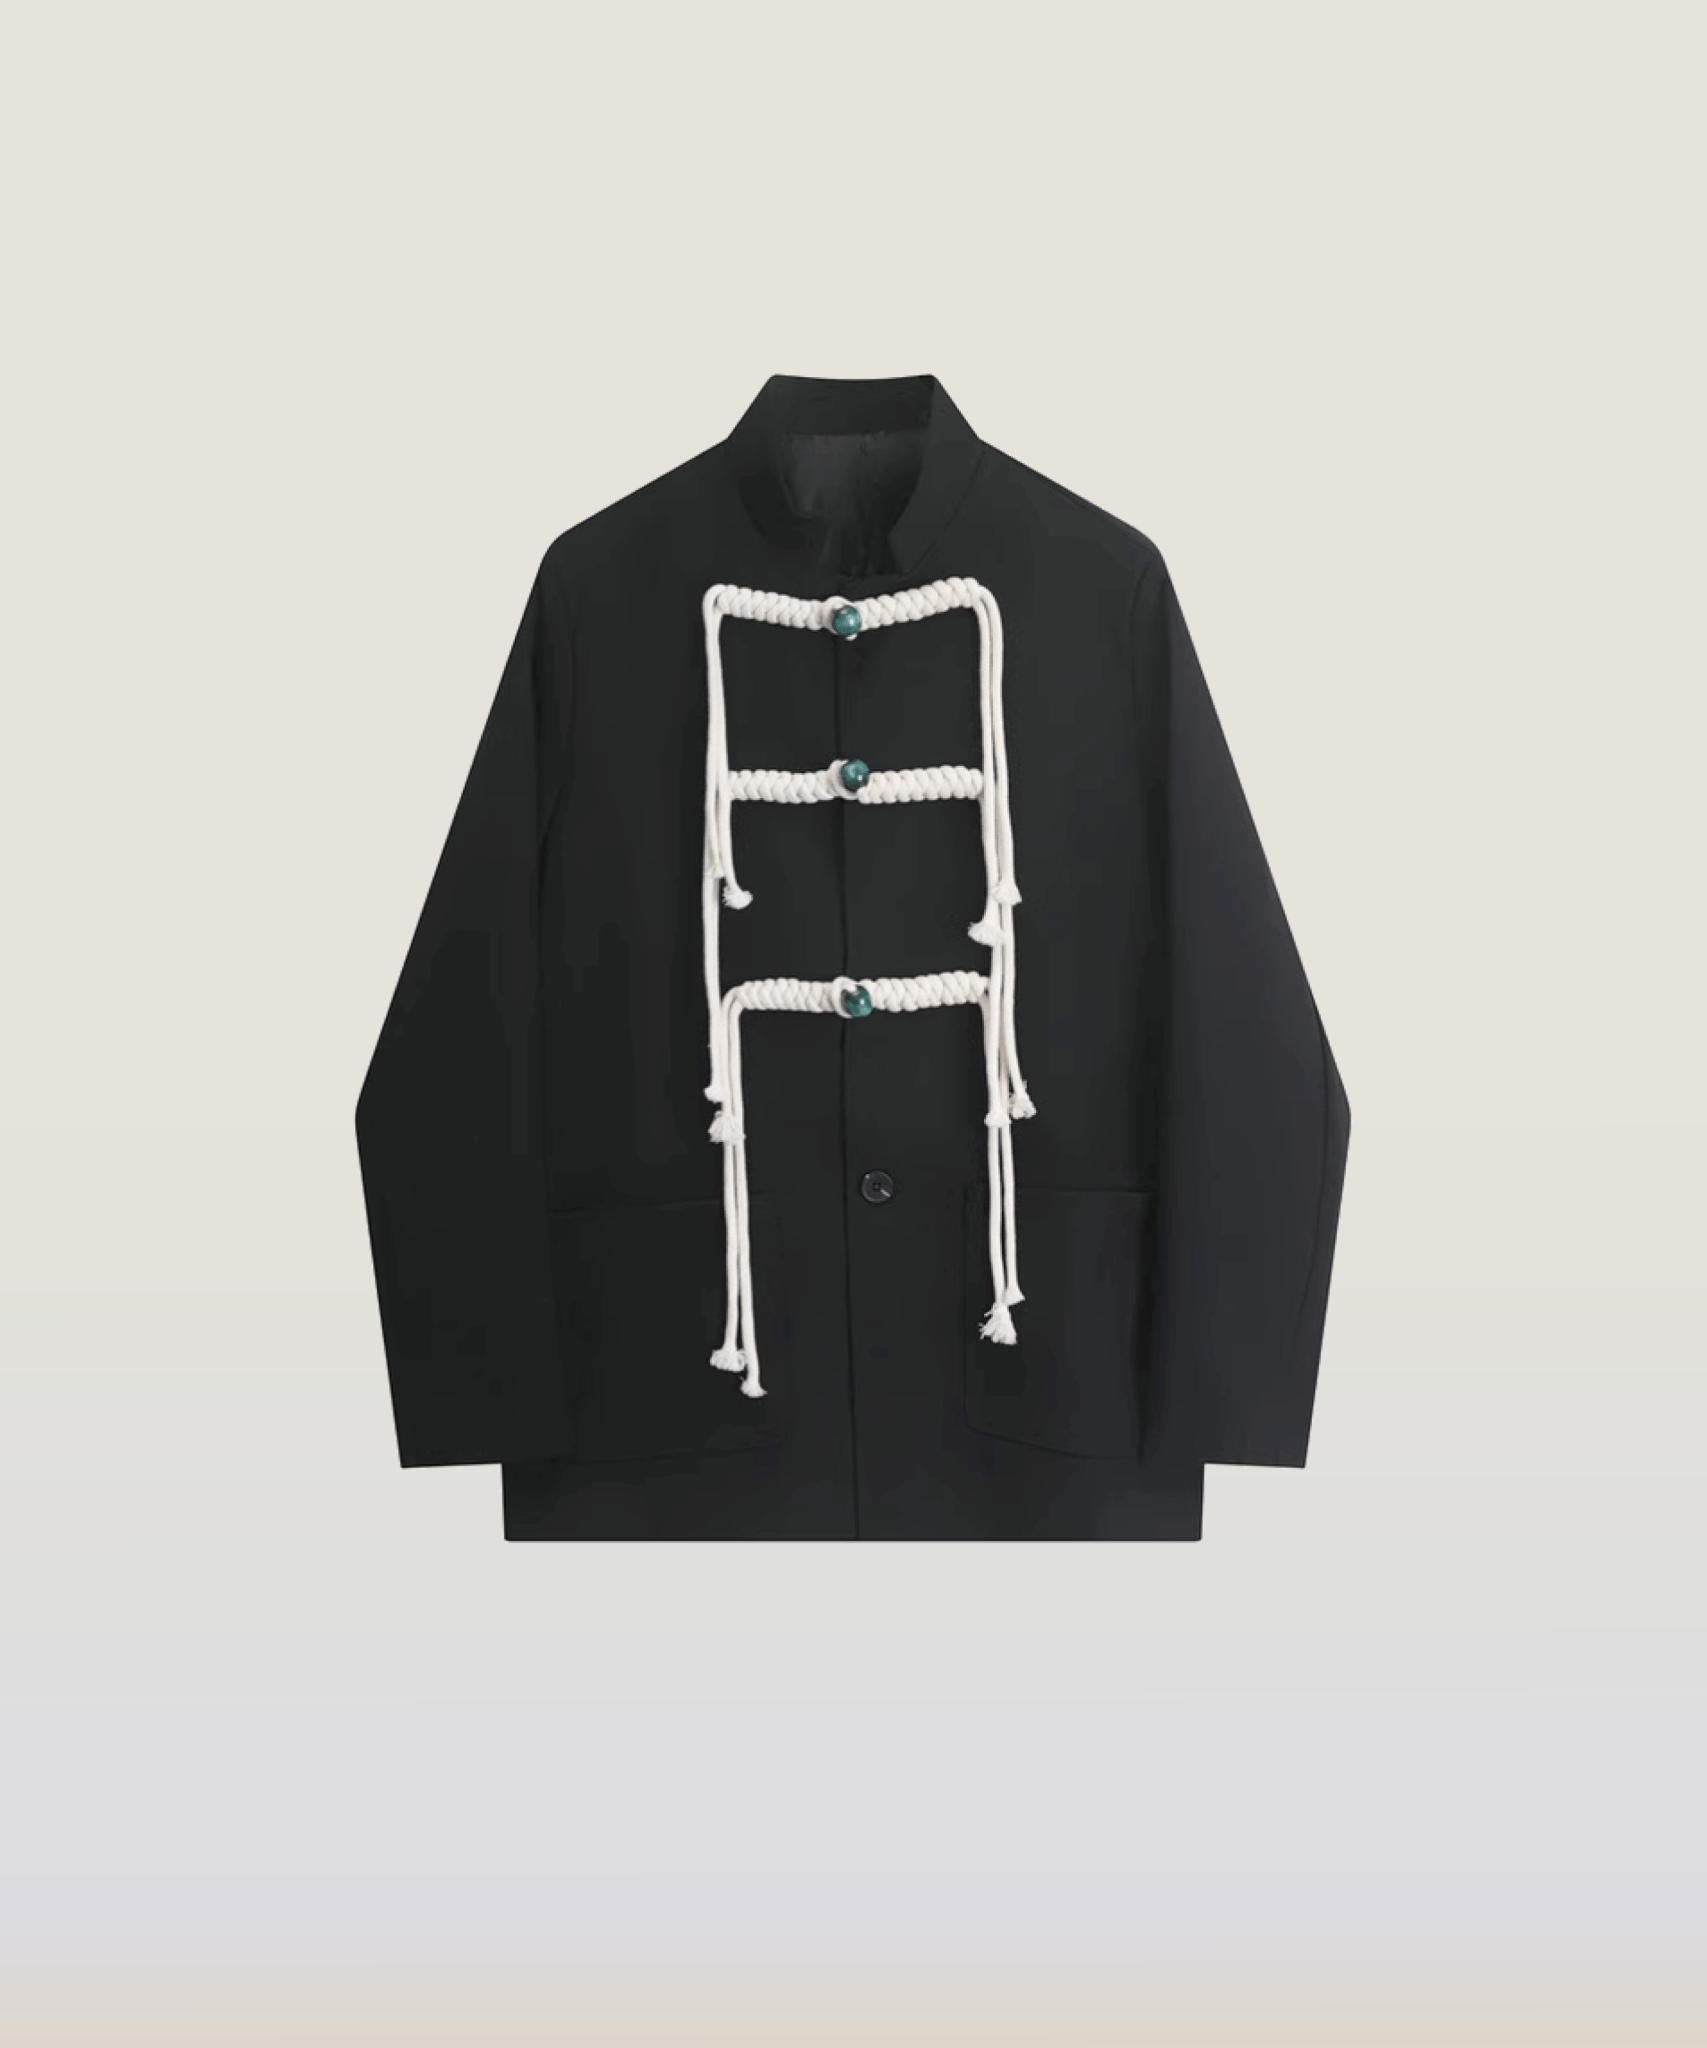 Vintage Knot Design Jacket - LOVE POMME POMME